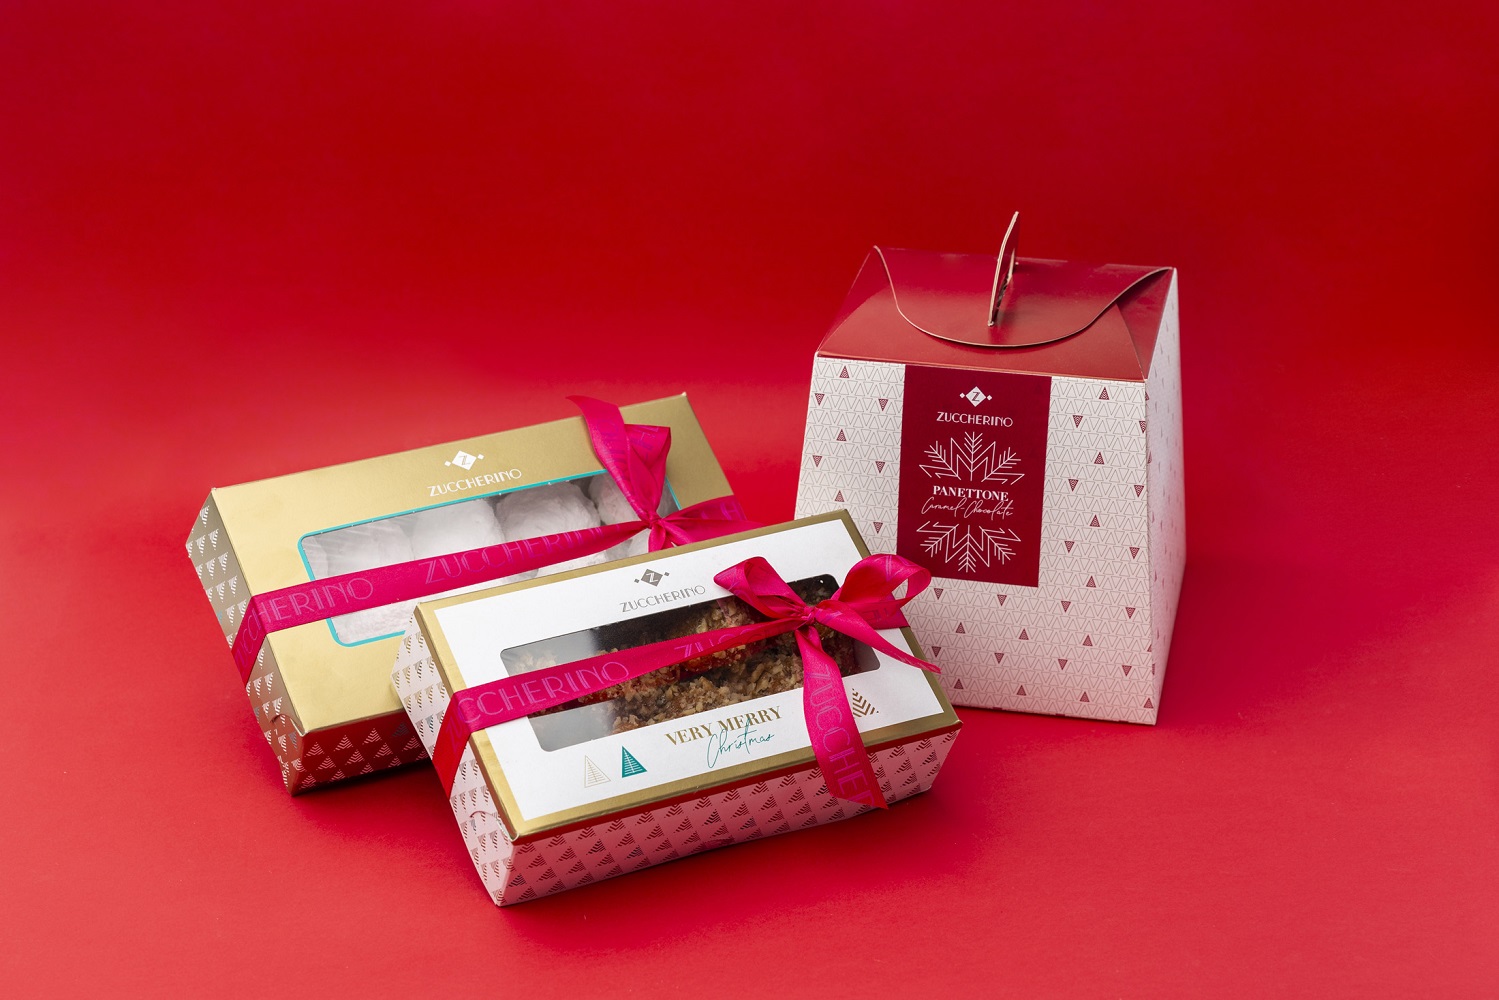 Χριστουγεννιάτικος διαγωνισμός Zuccherino: Κερδίστε το απόλυτο Red Velvet XMAS Cake!